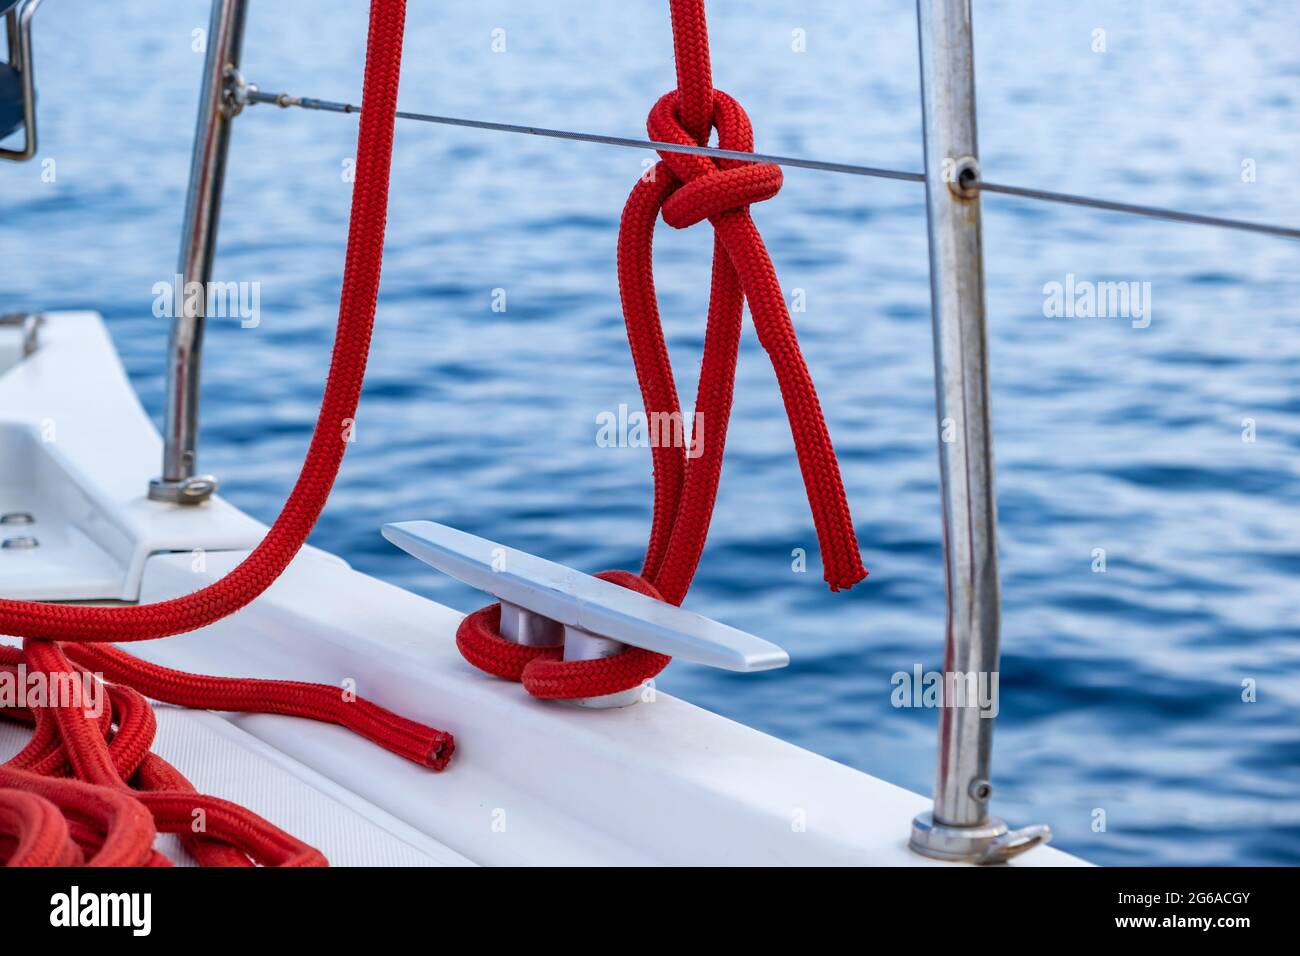 Bateau à voile amarrer des cordes sur le pont. Corde de yachting de couleur rouge attachée sur la cale, l'espace, le modèle de carte de croisière. Voilier sécurisé, outils et équipement clos Banque D'Images